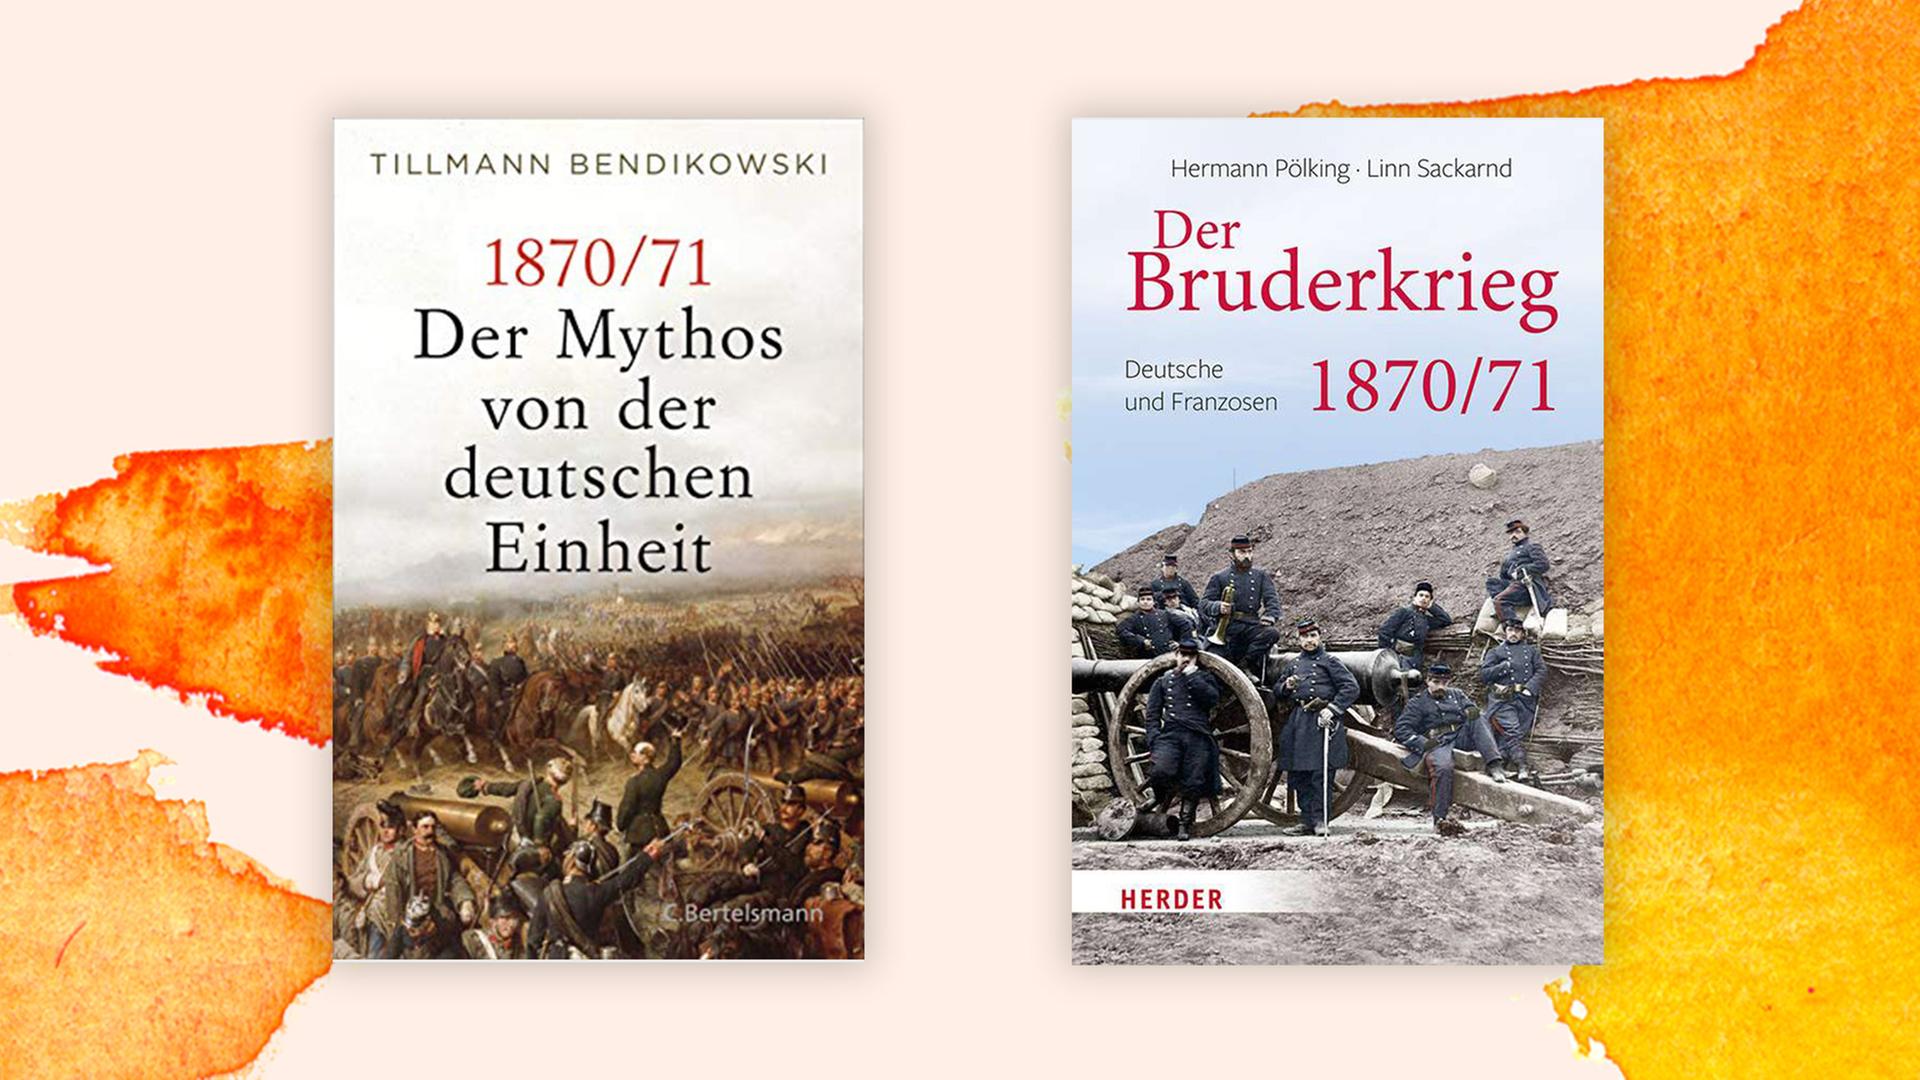 Die Cover von "Der Mythos von deutscher Einheit" und "Der Bruderkrieg 1870/71" auf orangefarbenem Untergrund.